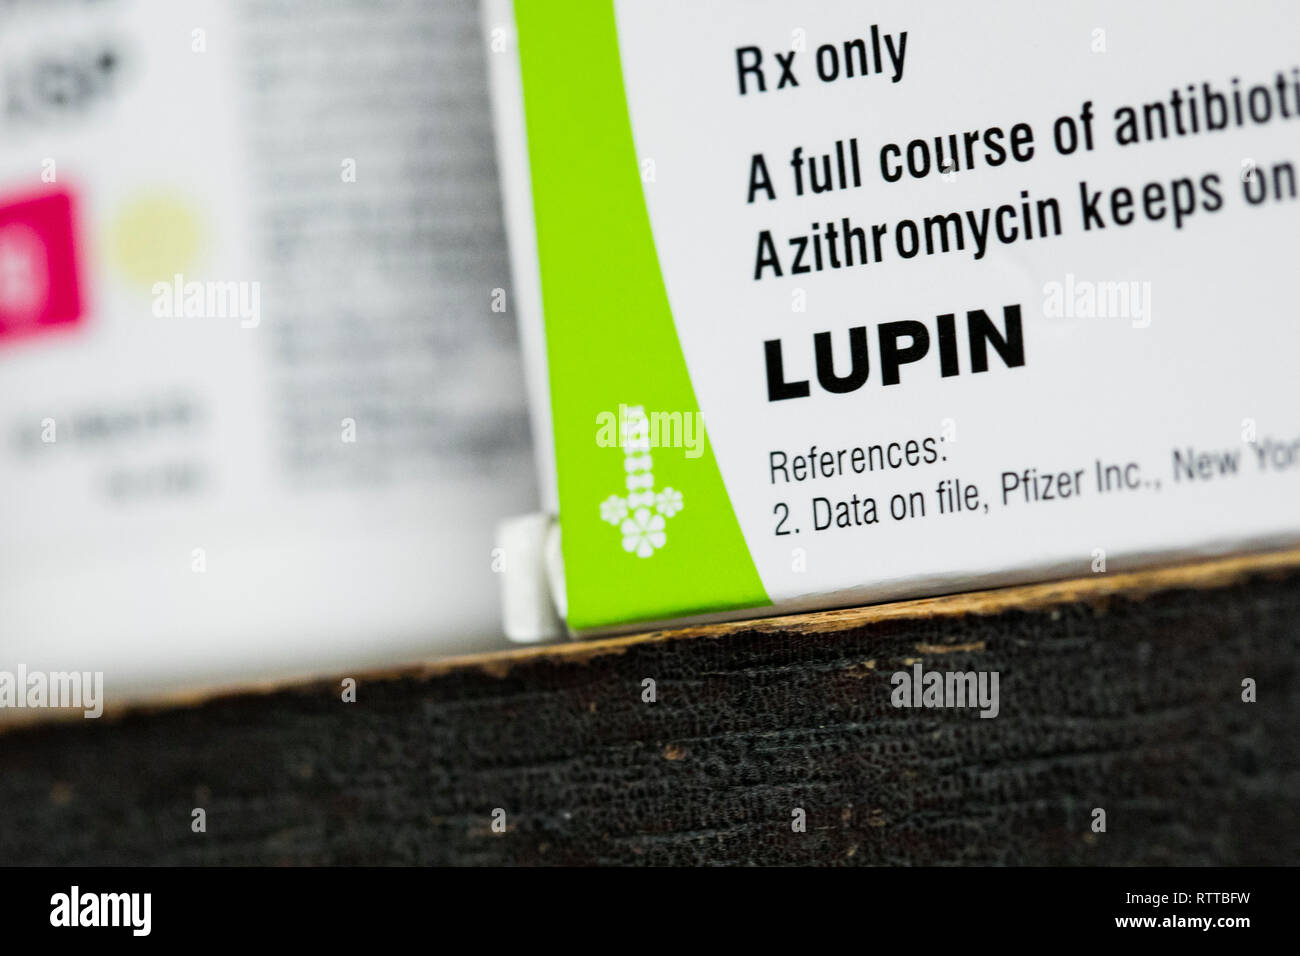 Un lupin Pharmaceuticals logo est visible sur l'emballage de produits pharmaceutiques sur ordonnance photographié dans une pharmacie. Banque D'Images